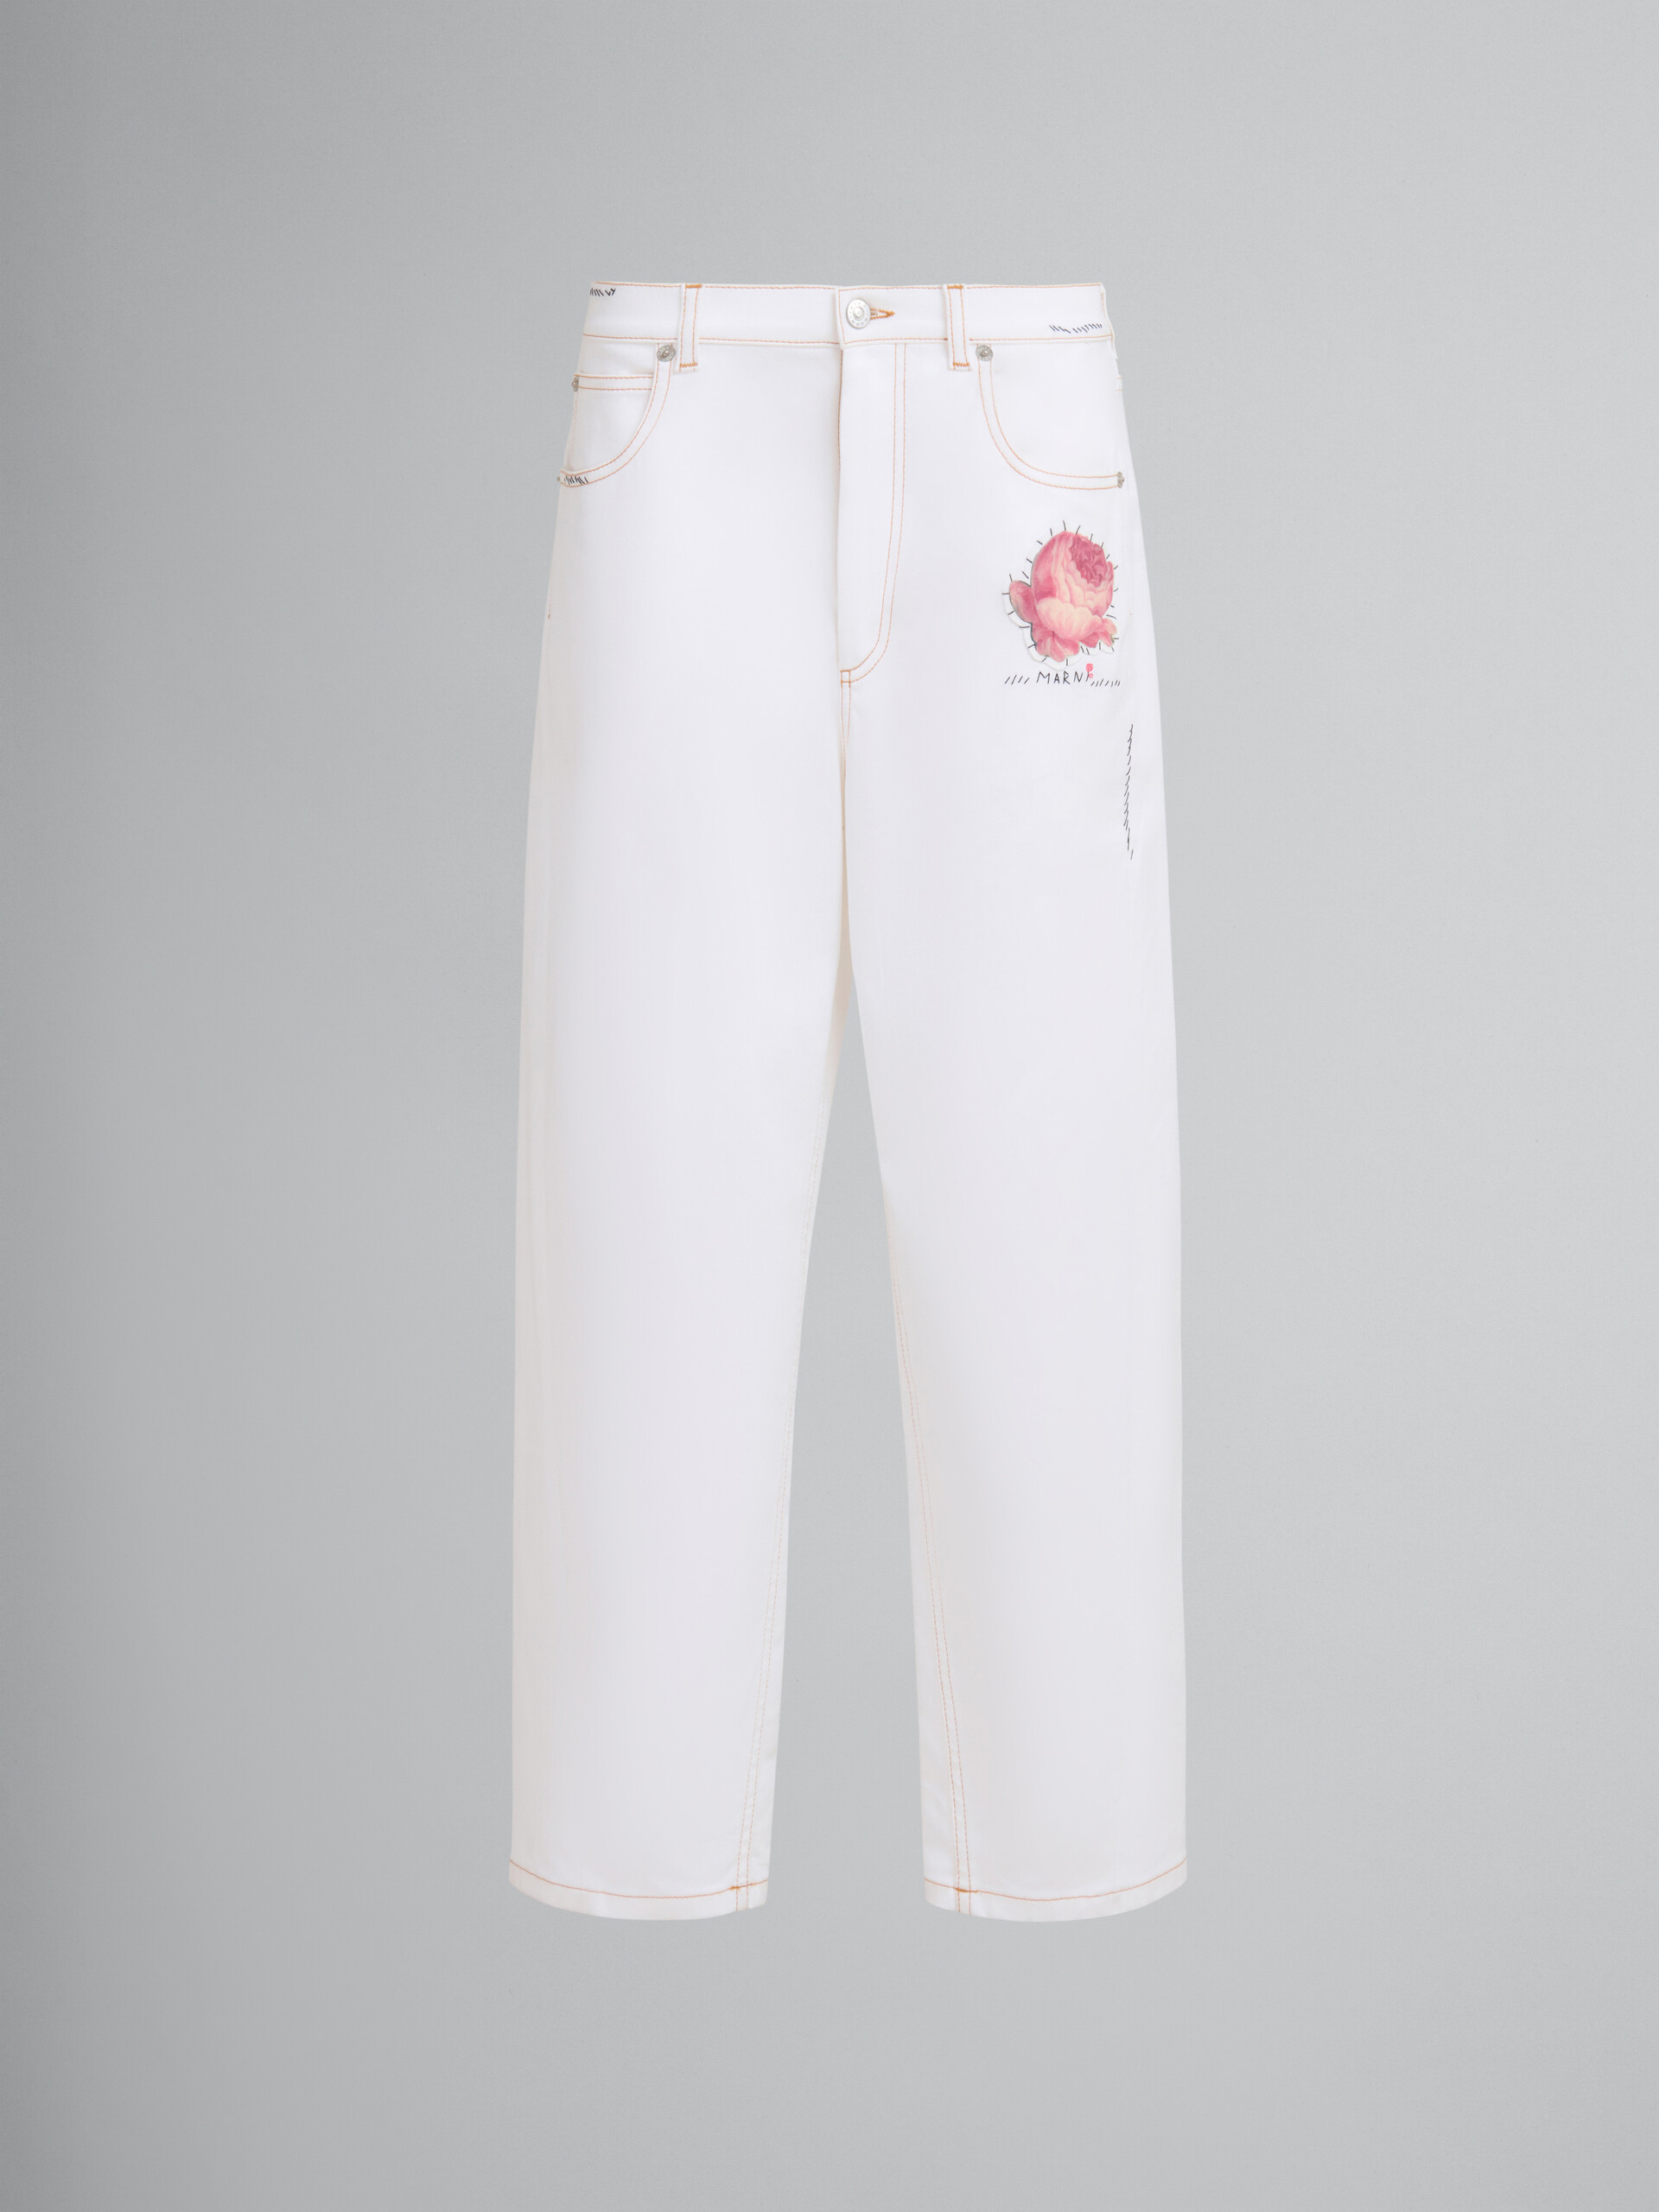 Pantalon en denim blanc avec patch fleur - Pantalons - Image 1